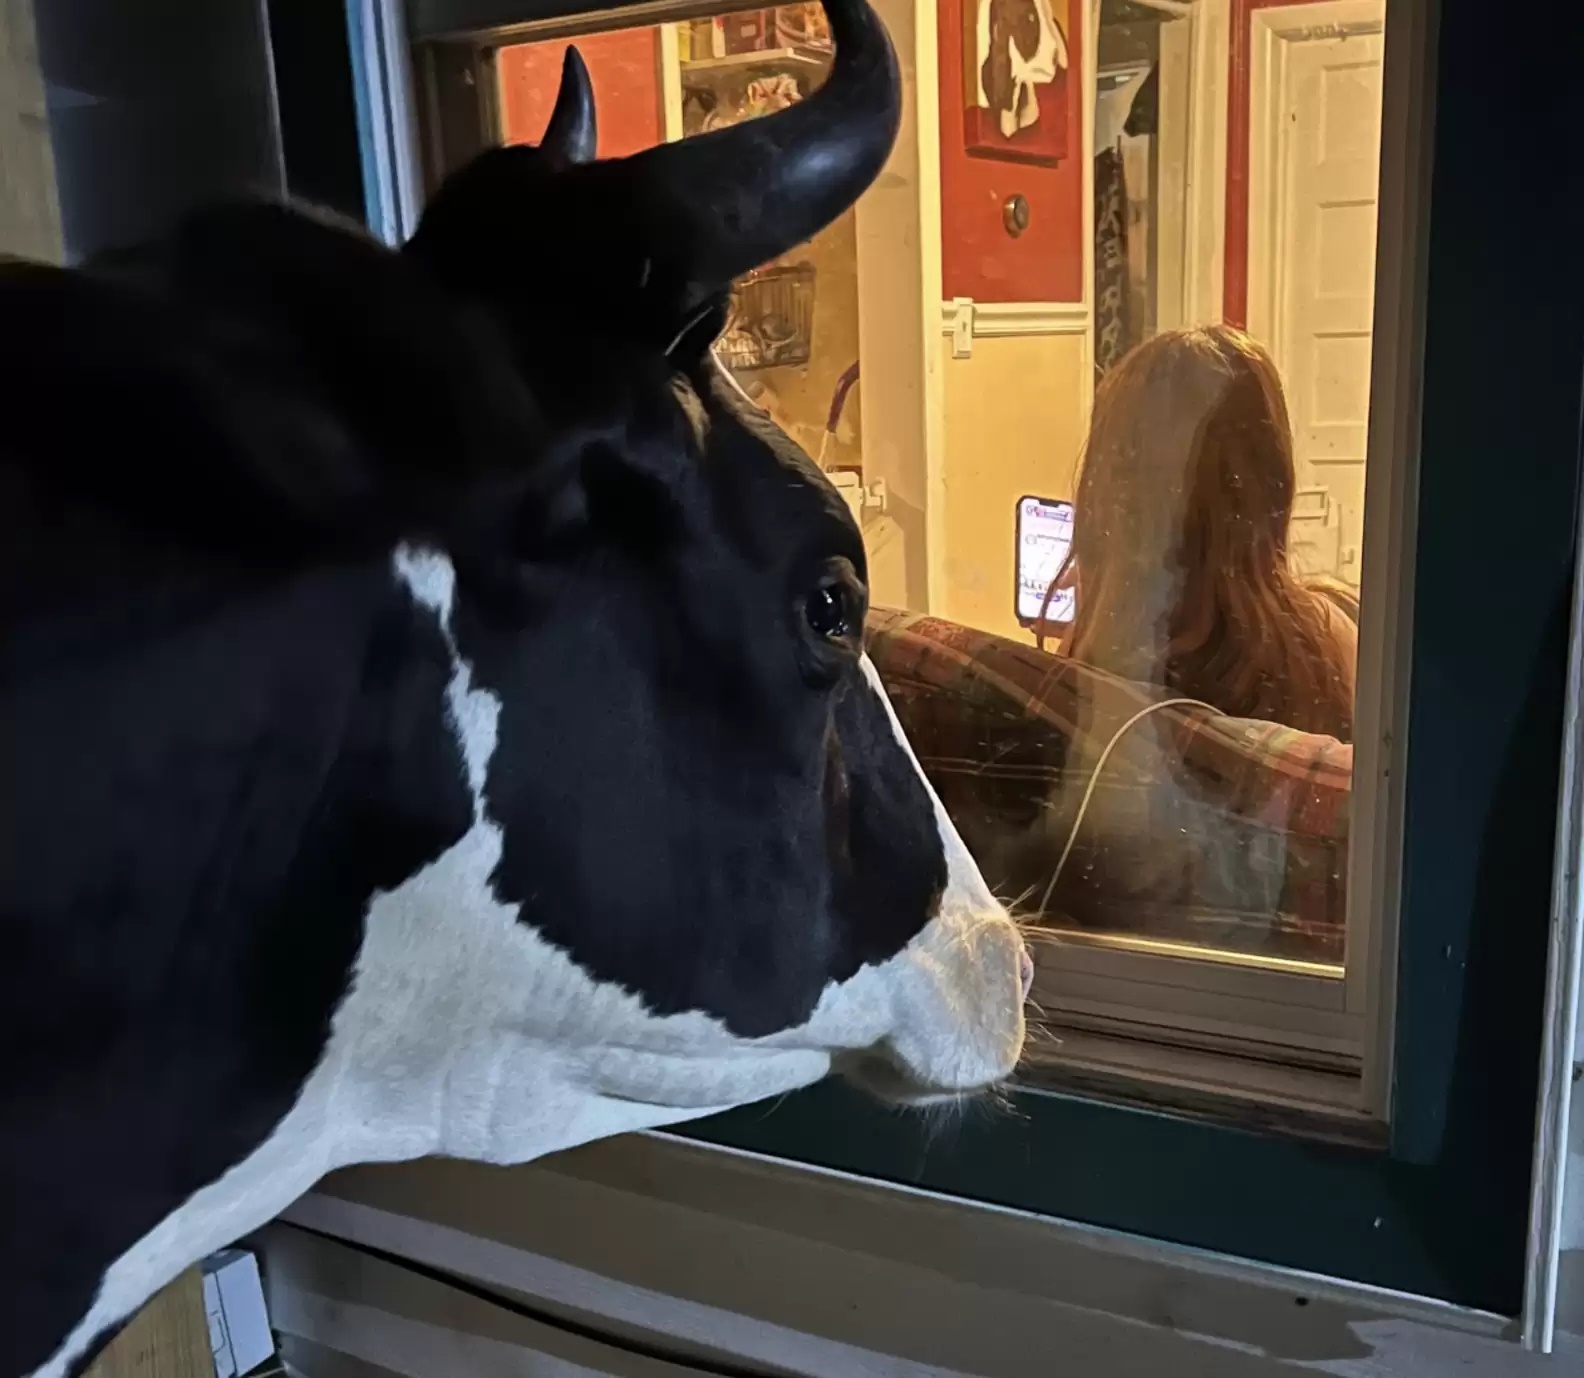 Vaca tenta invadir casa e motivo chama atenção